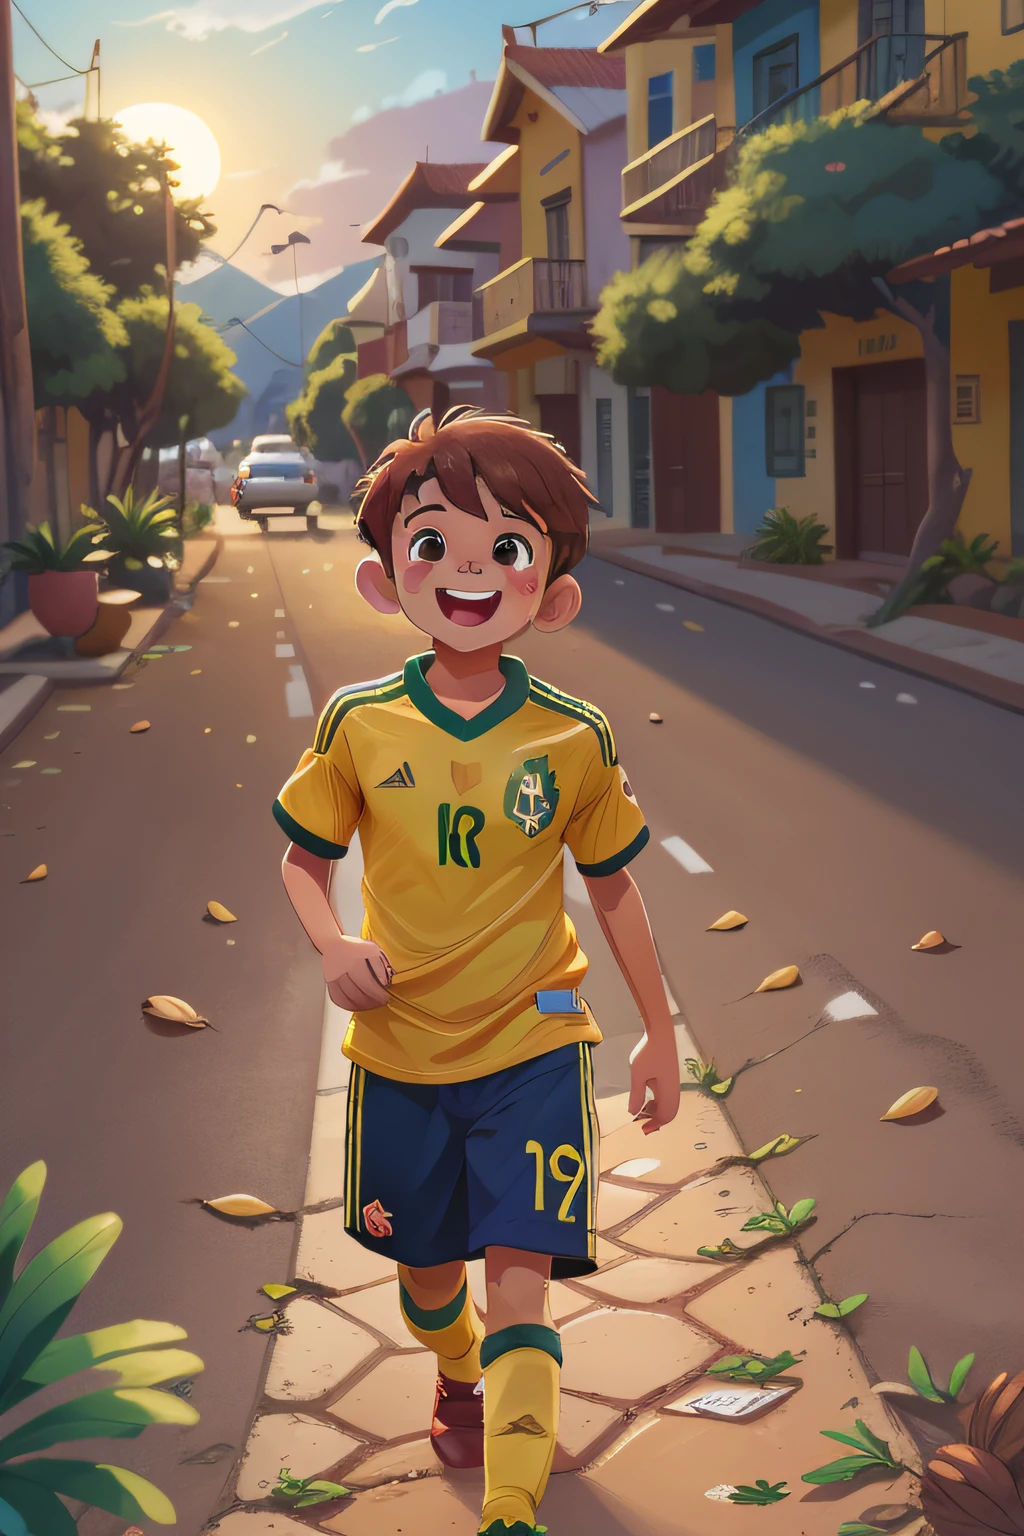 9岁男孩, 短发, 切, 栗子, olhos 栗子, 巴西国家足球队球衣, 黄色的, 夕阳下独自行走在美丽的山景中, 快乐的, 迪士尼香奈儿风格, 超高清图像, 8千, 极端主义者.